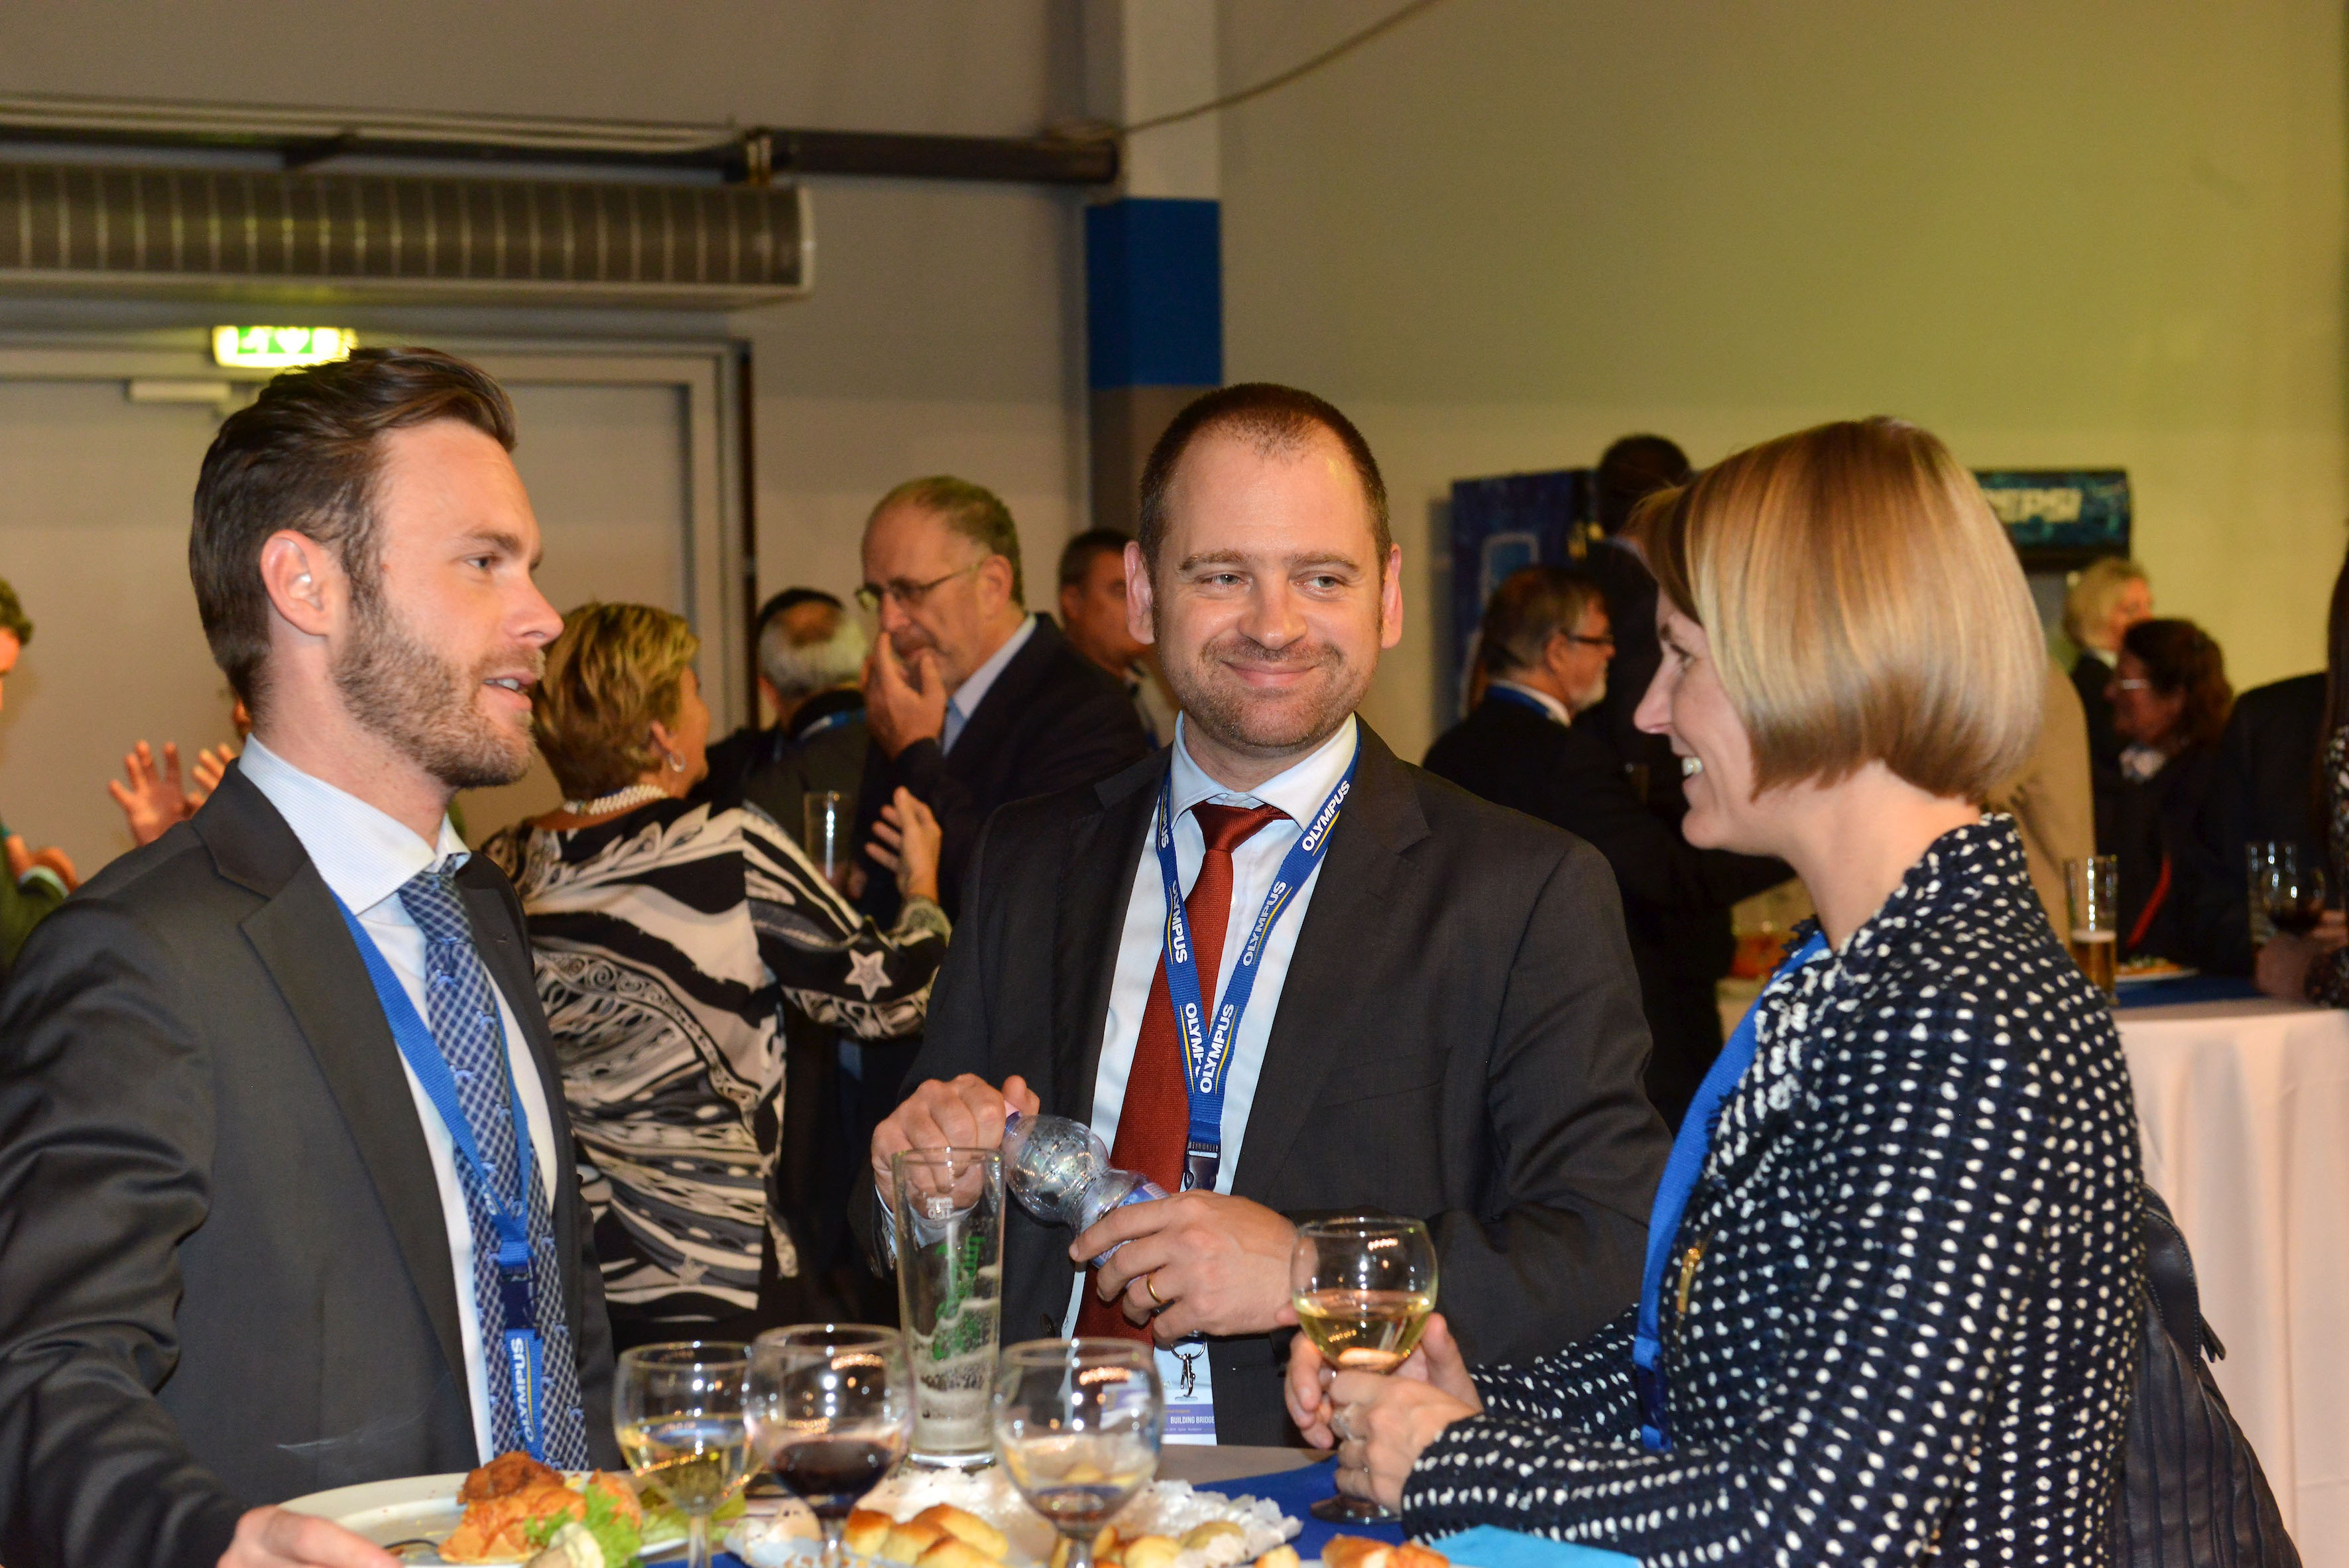 Budapest participants / ESGE congress 2015